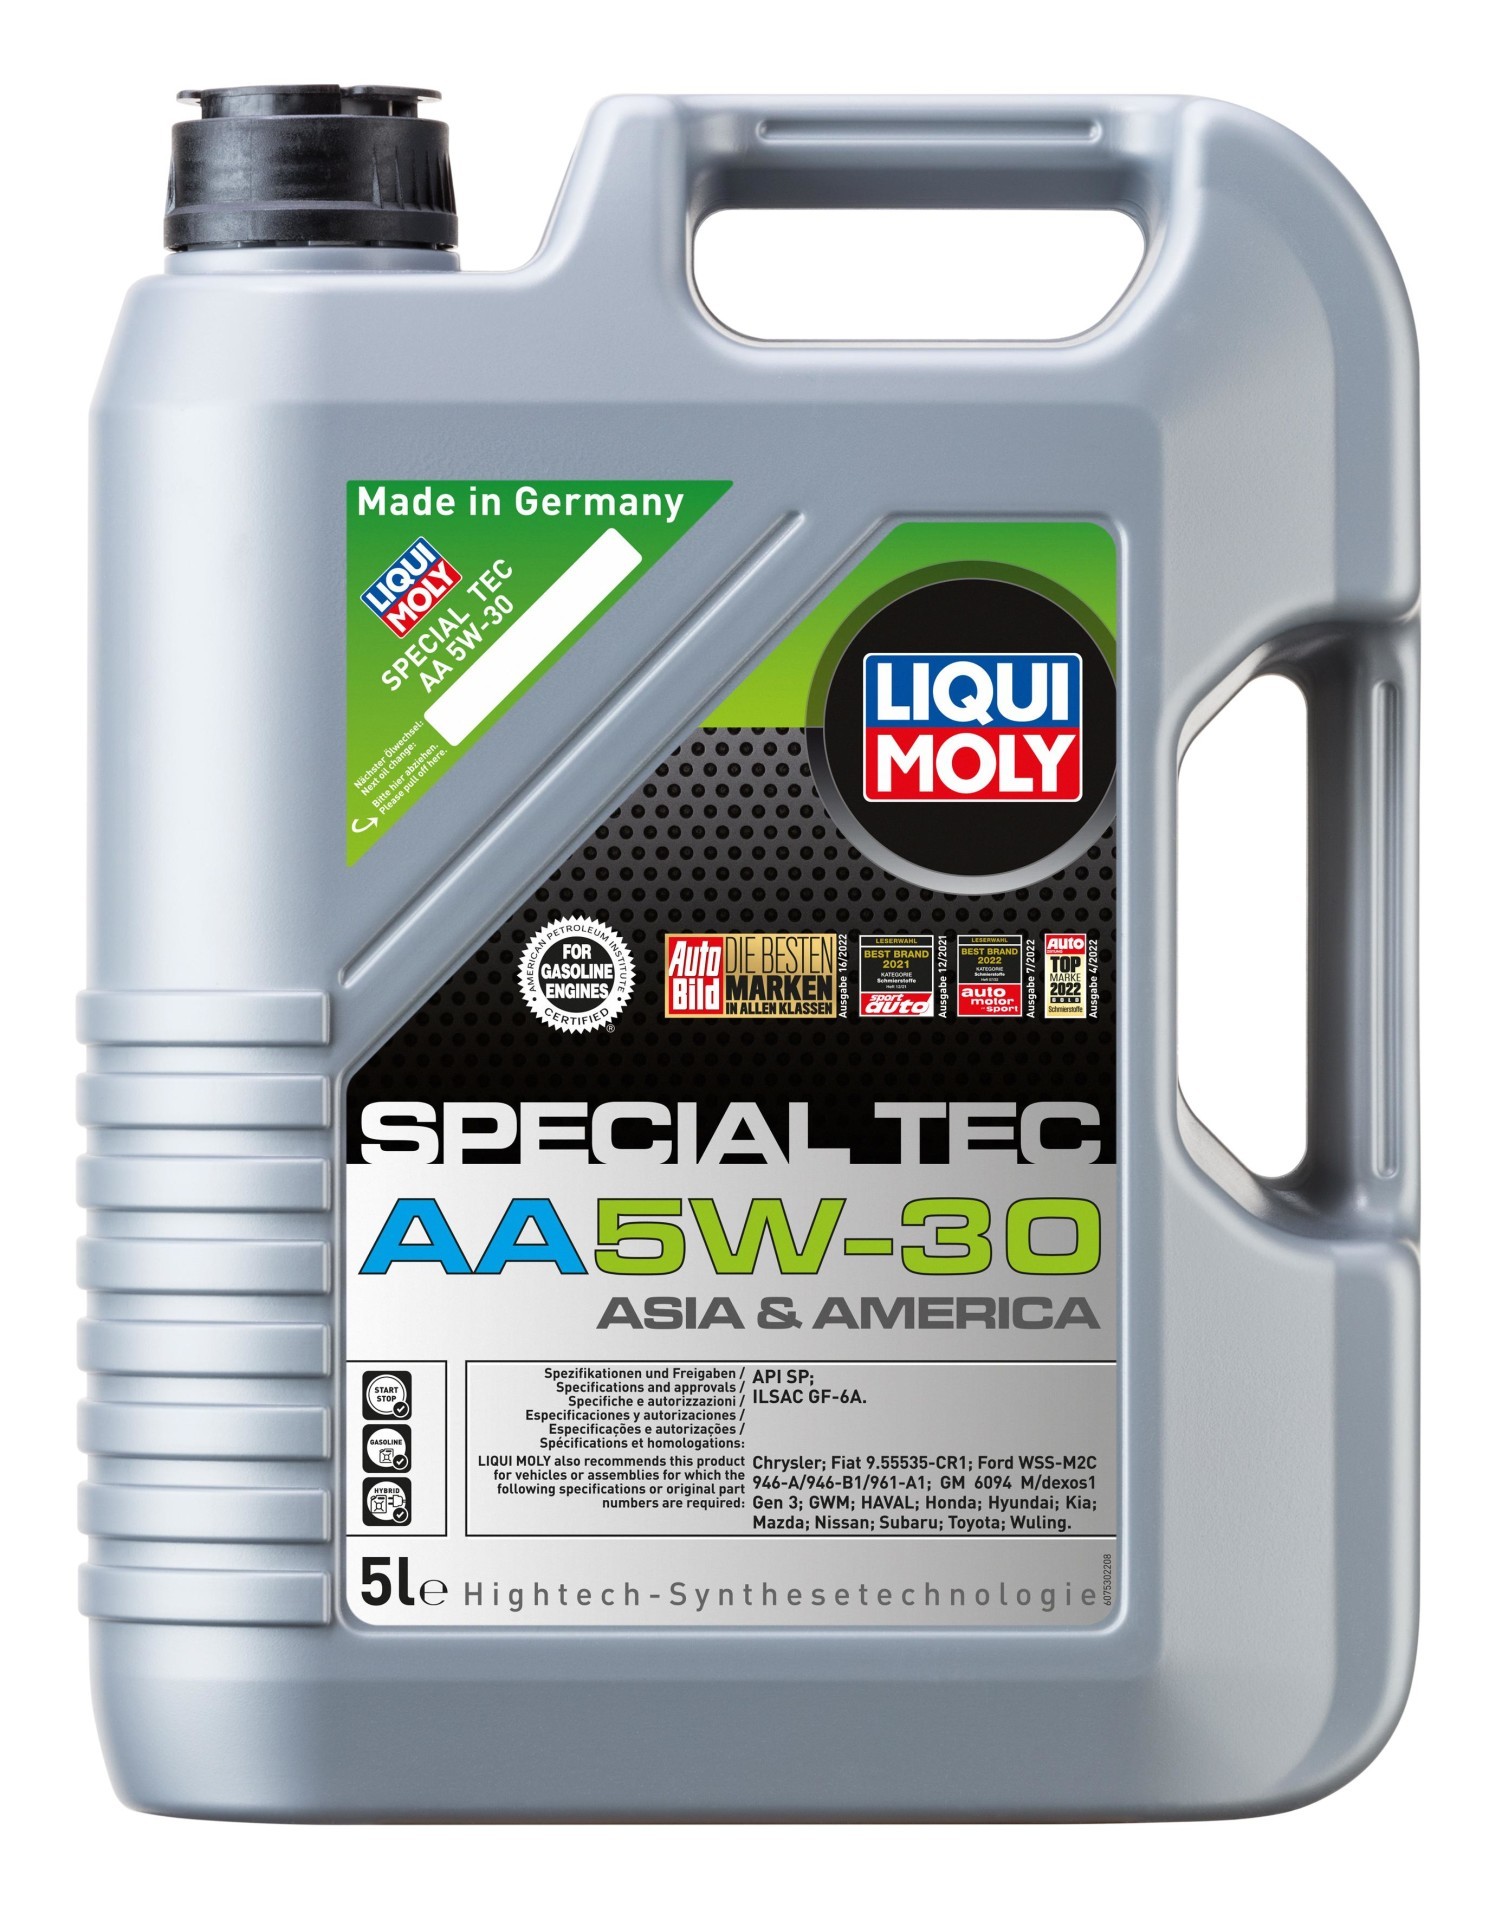 LIQUI MOLY Motoröl Special Tec AA 5W-30 5 L (20954) für OPEL Campo Monterey A